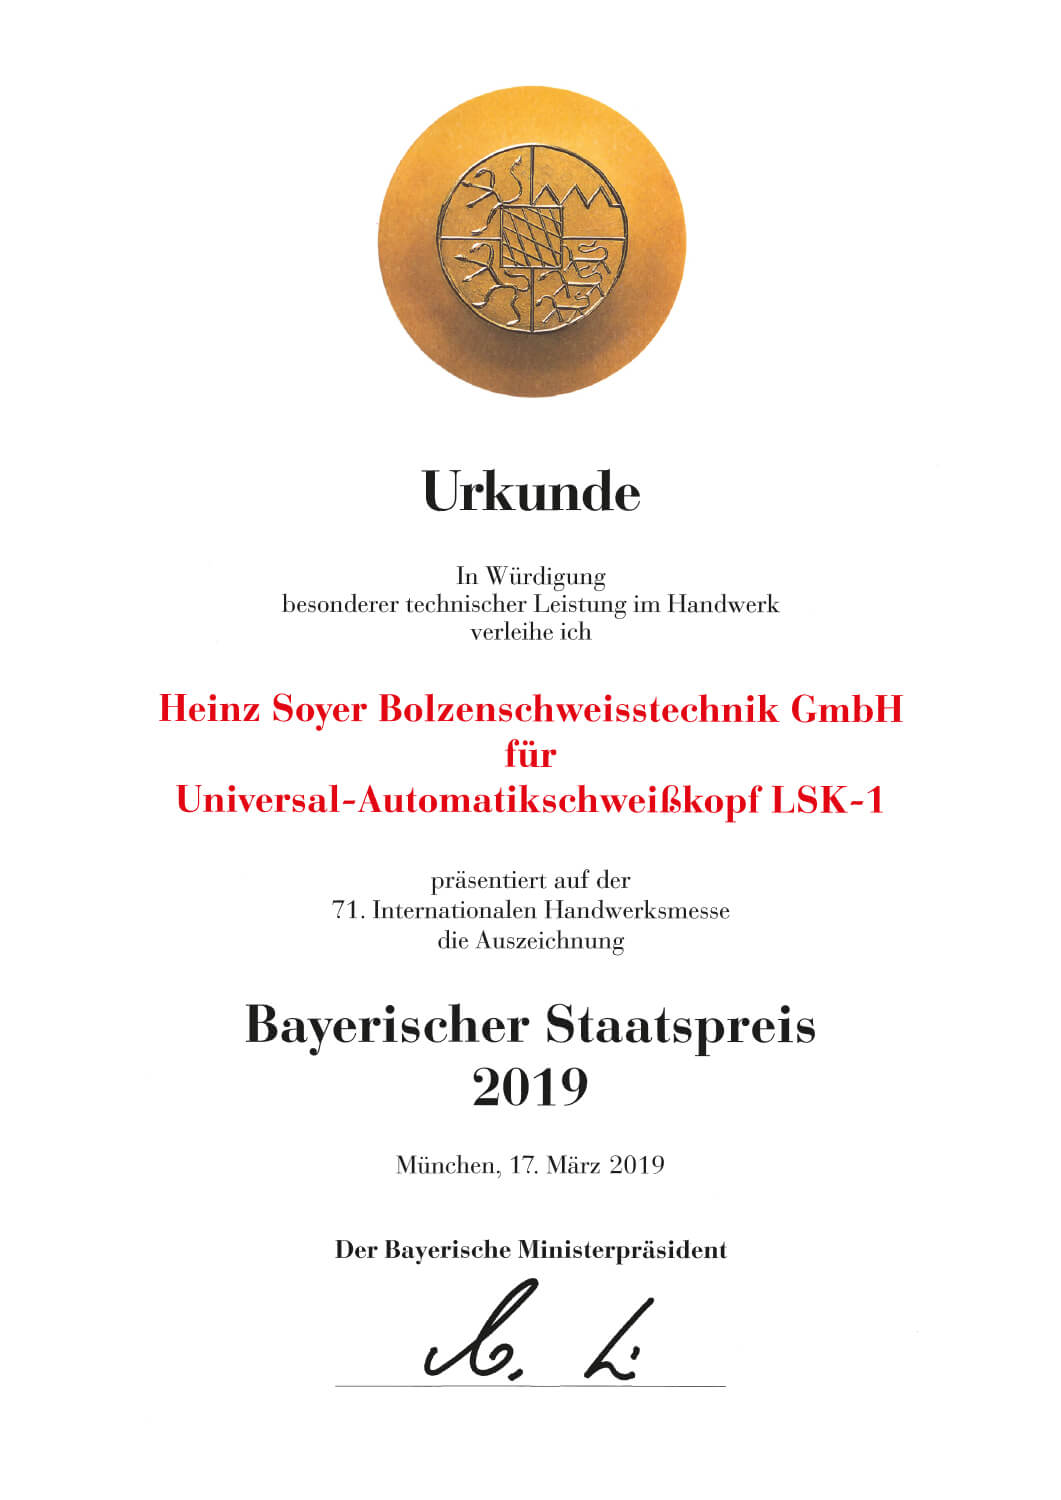 Urkunde Bayerischer Staatspreis 2019